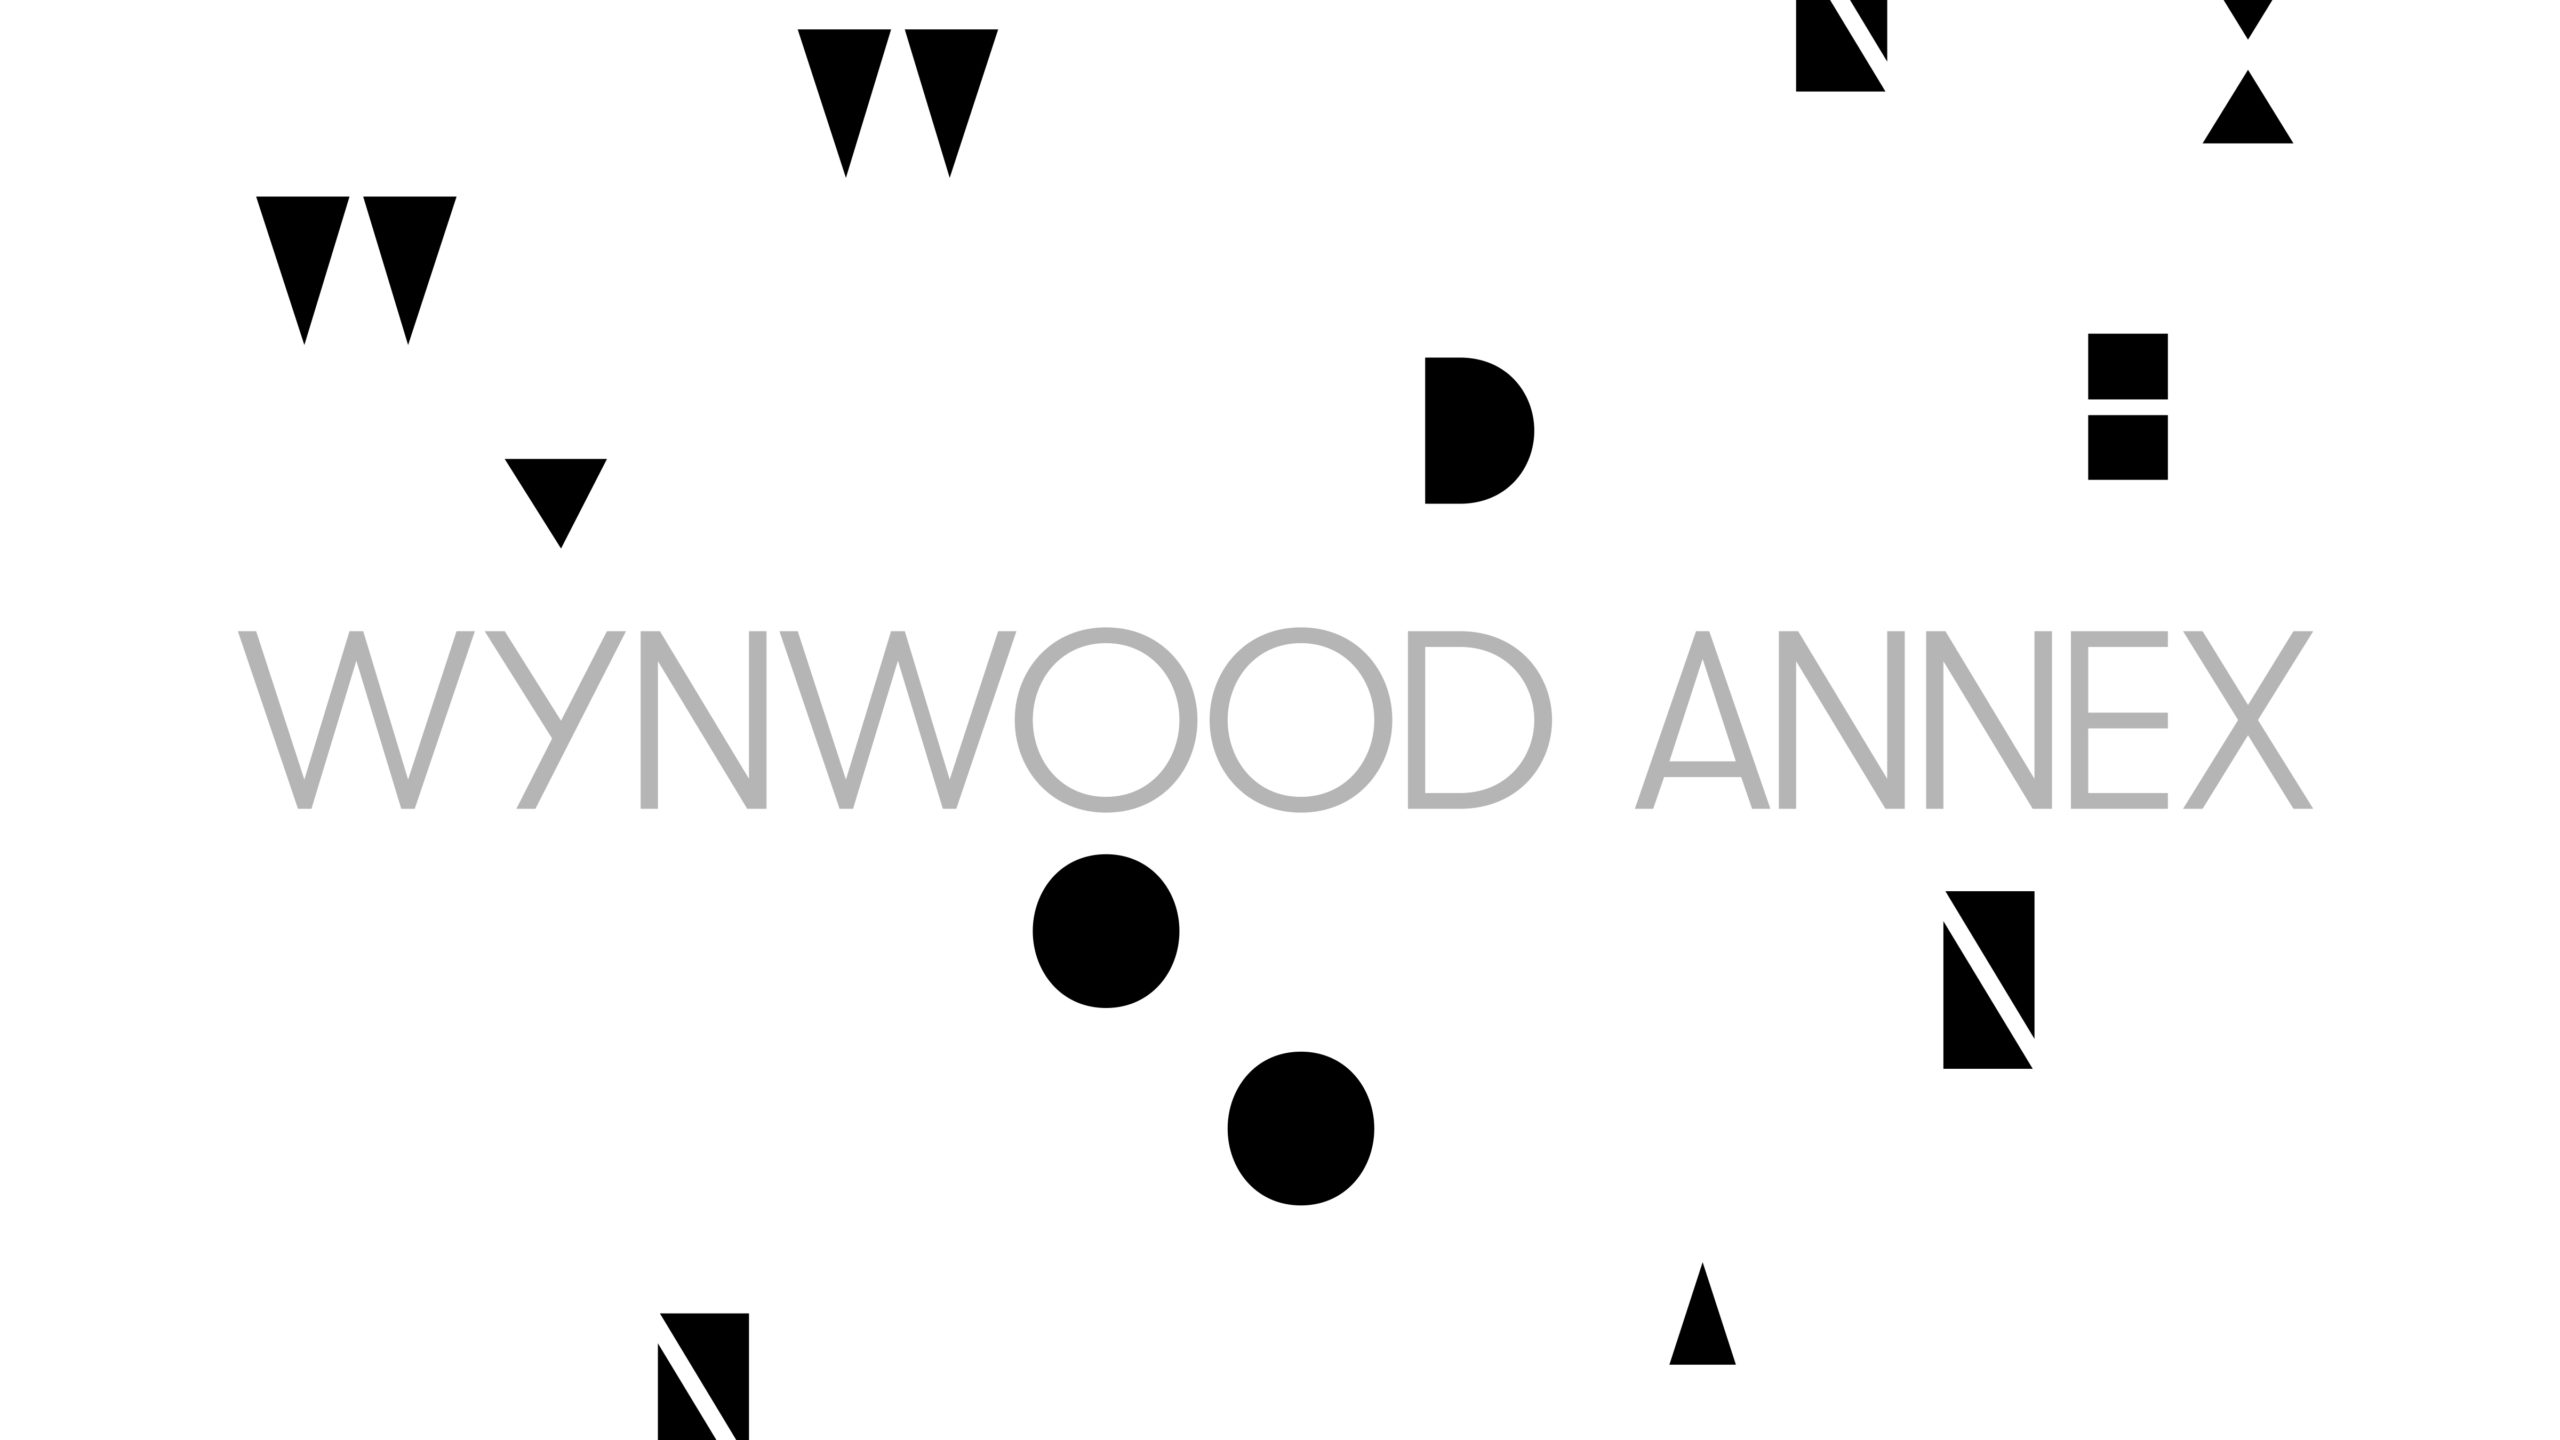 Wynwood Annex_ concept 2_r3 copy